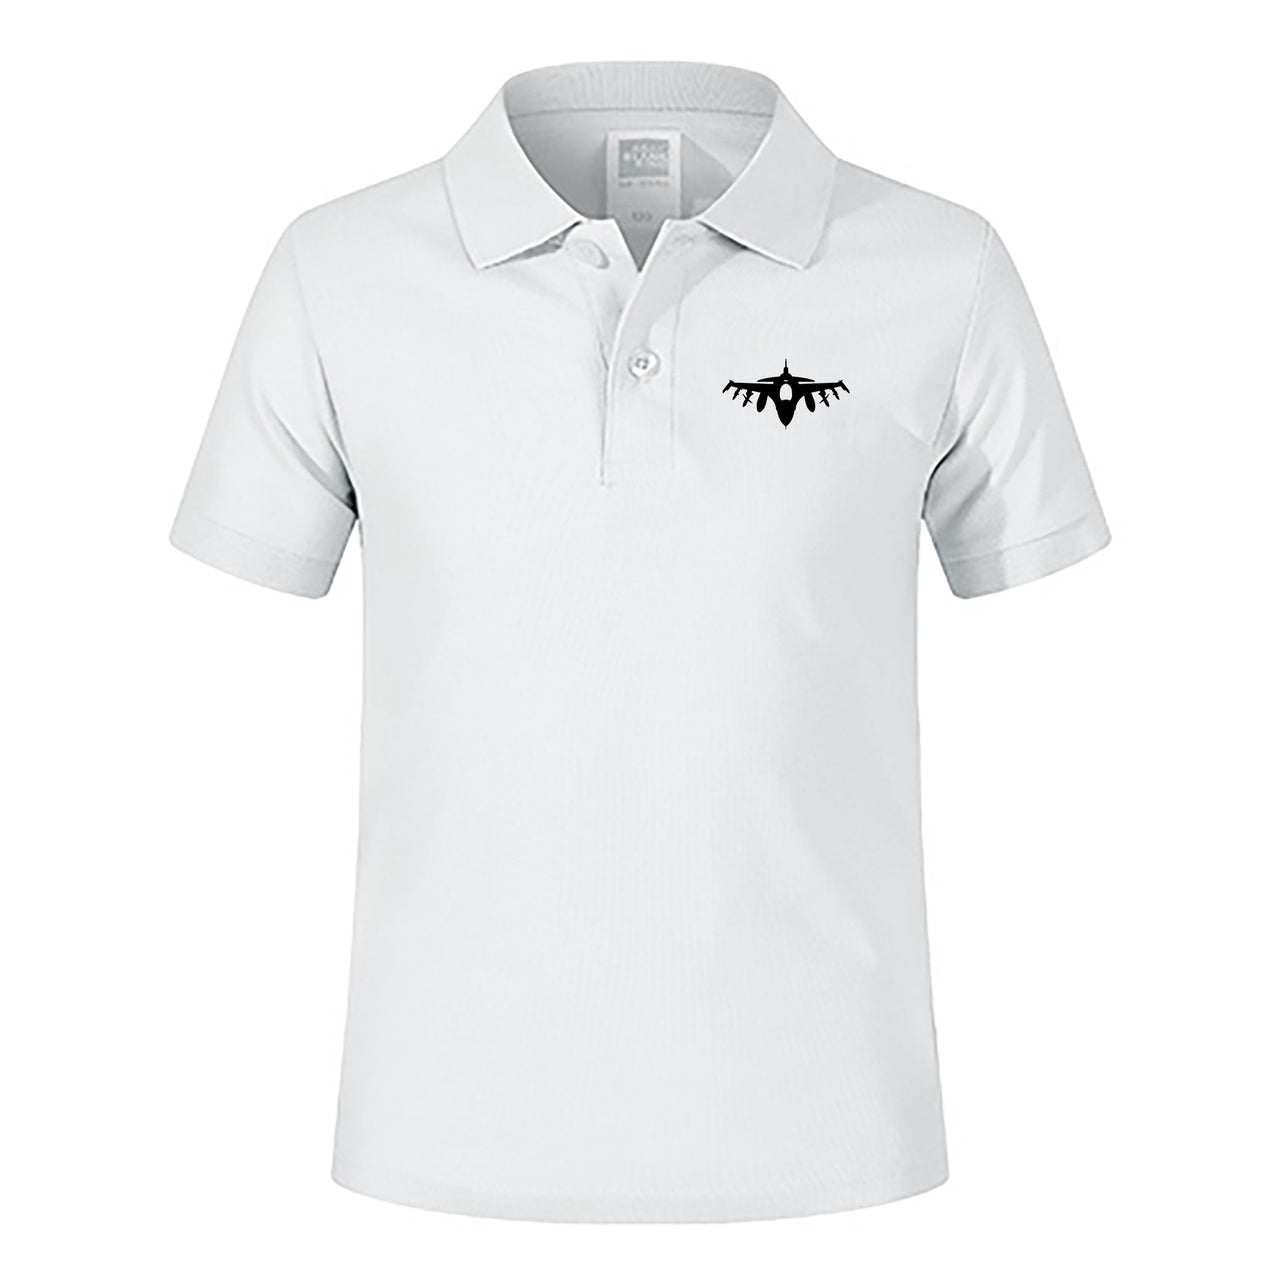 Fighting Falcon F16 Silhouette Designed Children Polo T-Shirts